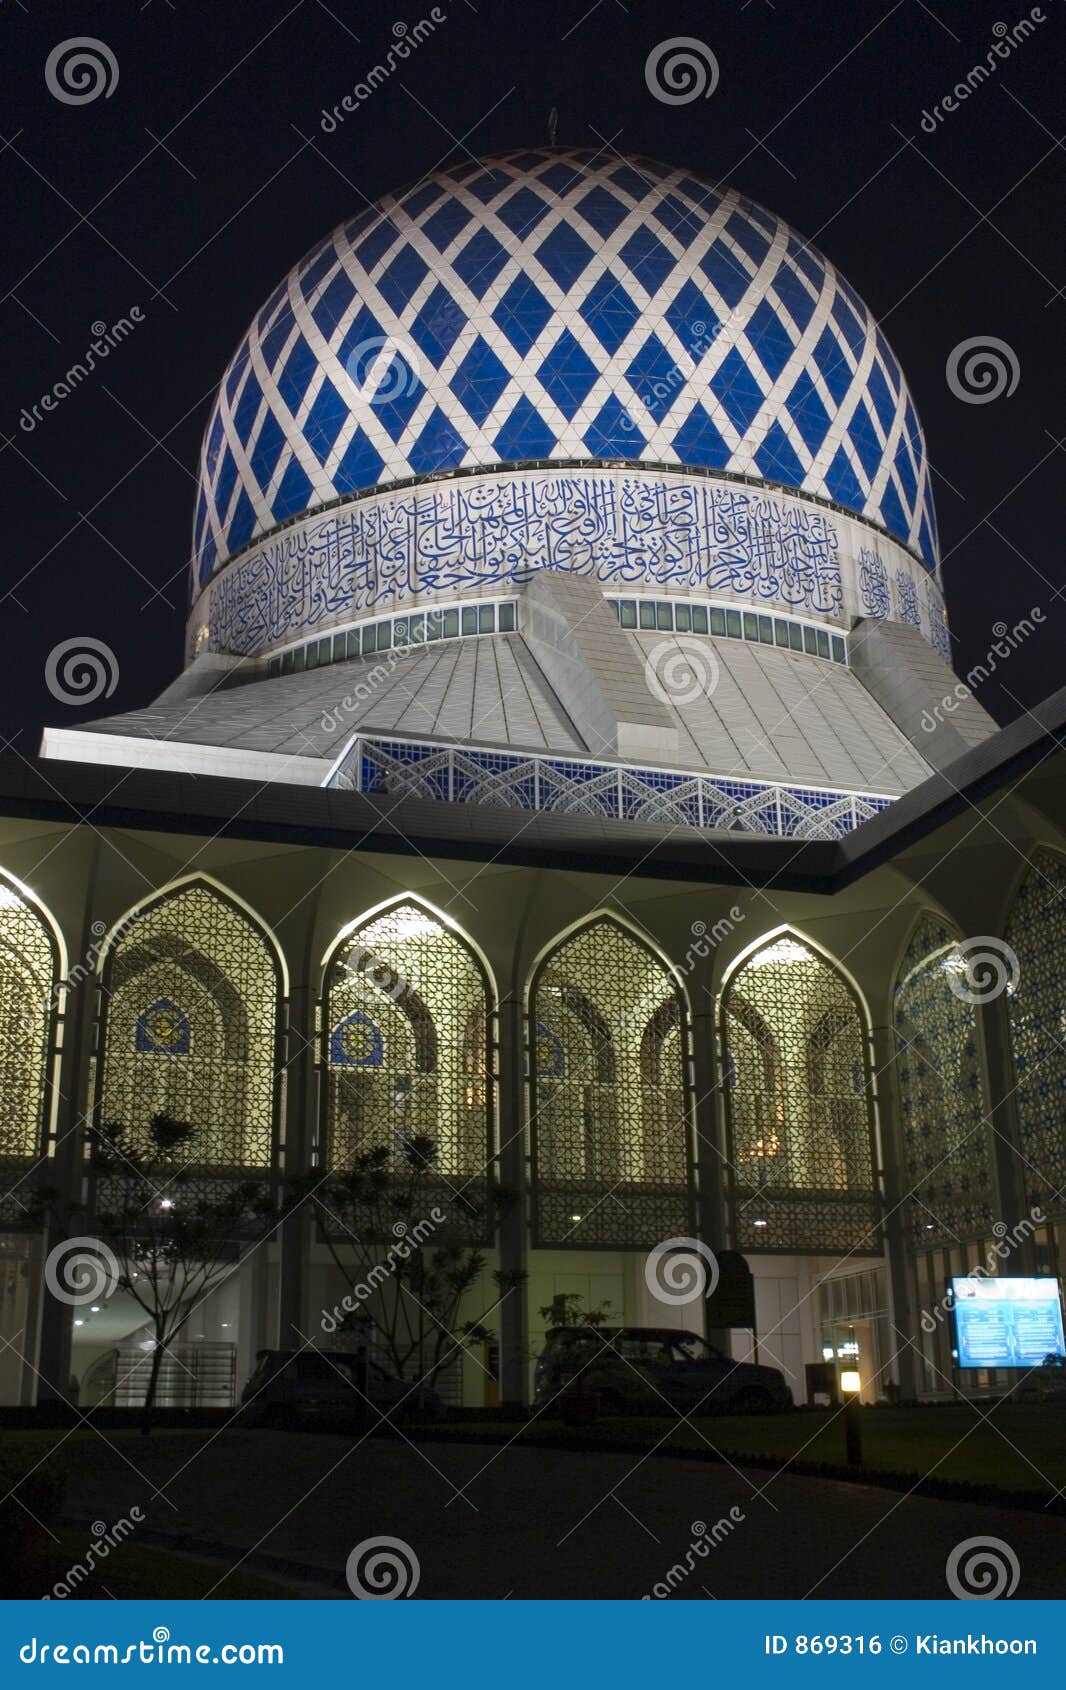 the sultan salahuddin abdul aziz shah mosque in shah alam.